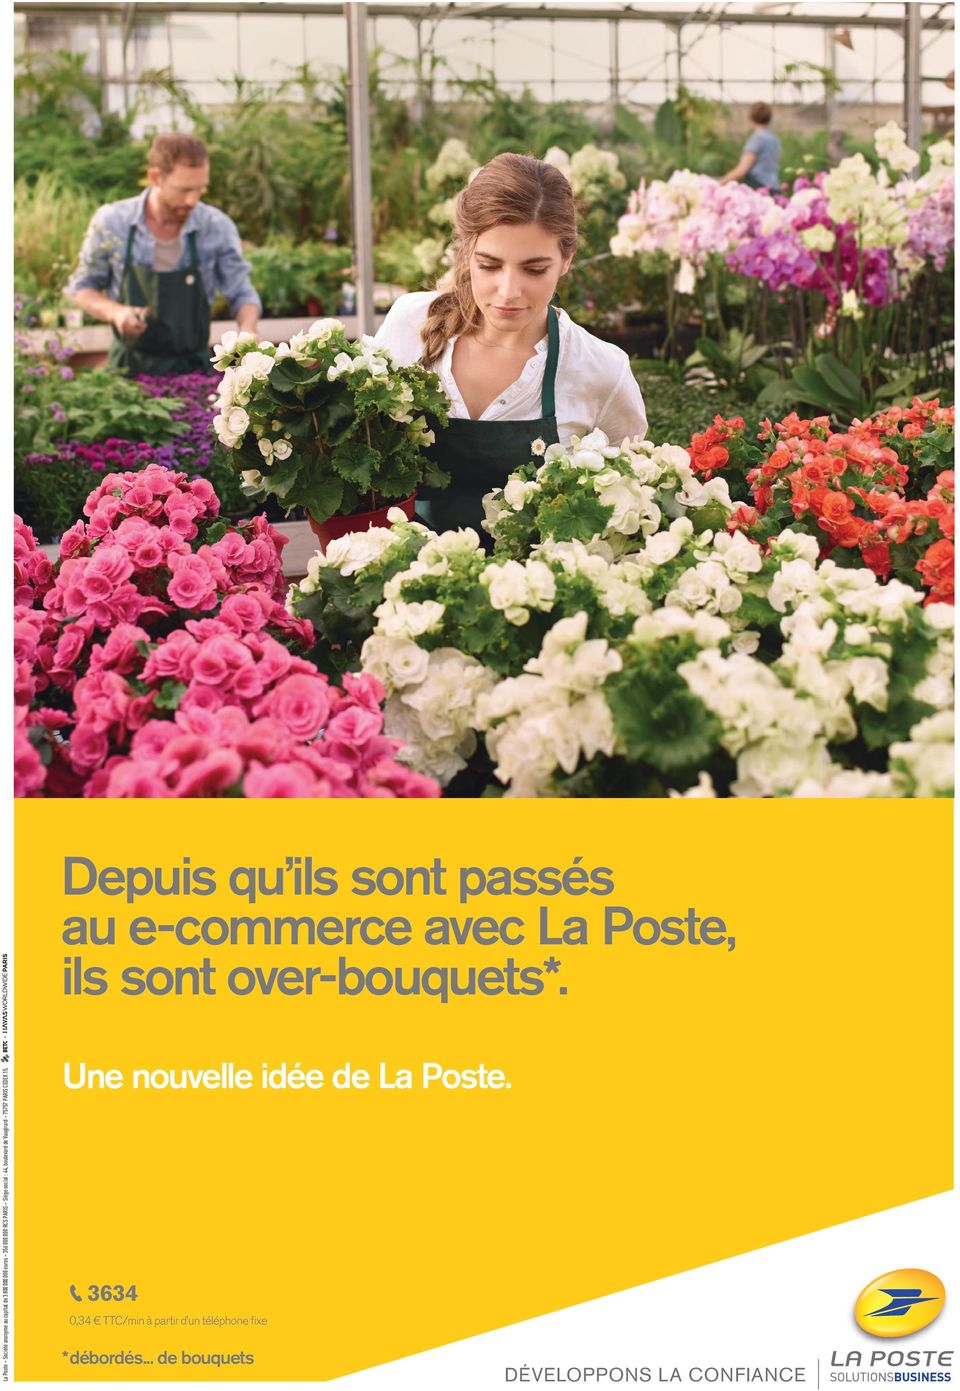 Depuis qu ils sont passés au e-commerce avec La Poste, ils sont over-bouquets*.